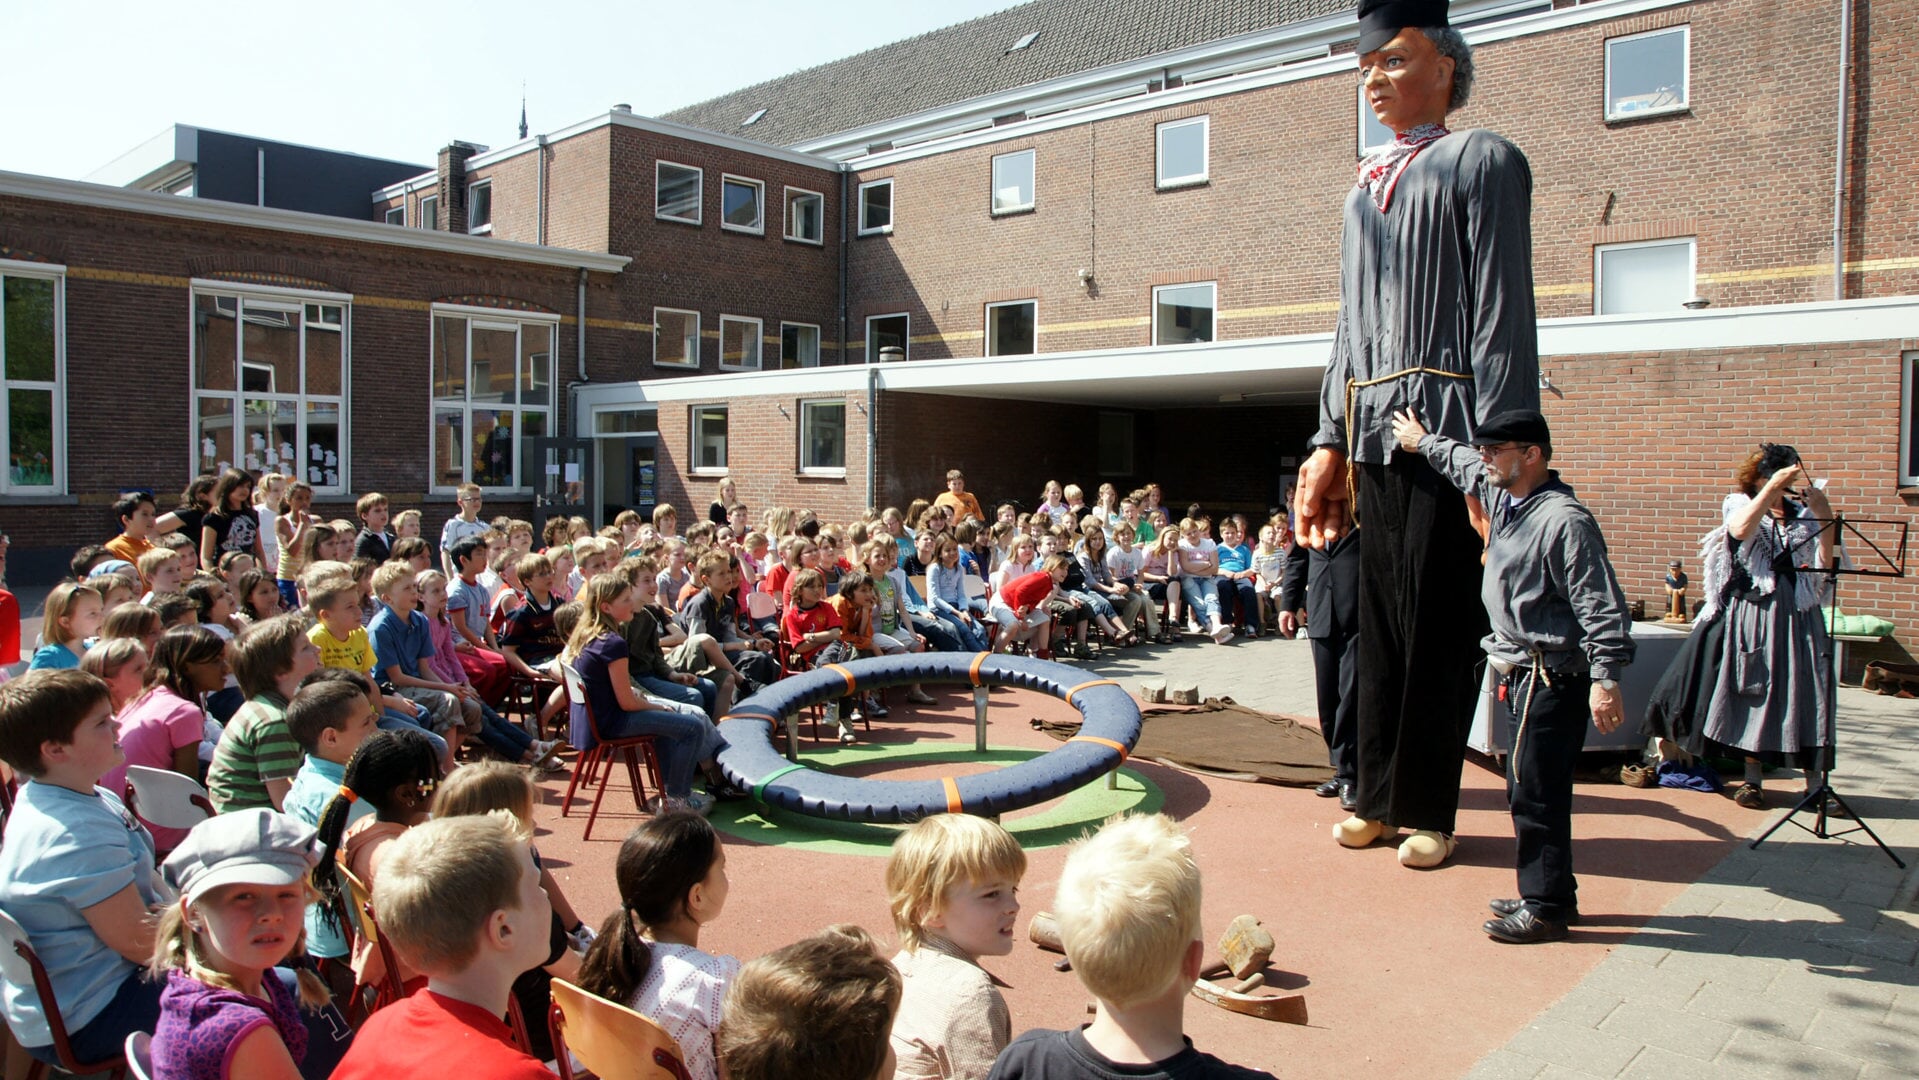 Jas de Keistamper ging in 2009 op bezoek bij jeugd van de Angelaschool. Vier jaar later erkende Unesco hem als representant van de reuzencultuur in Nederland en kreeg hij een plaatsje op de inventarislijst voor immaterieel erfgoed.